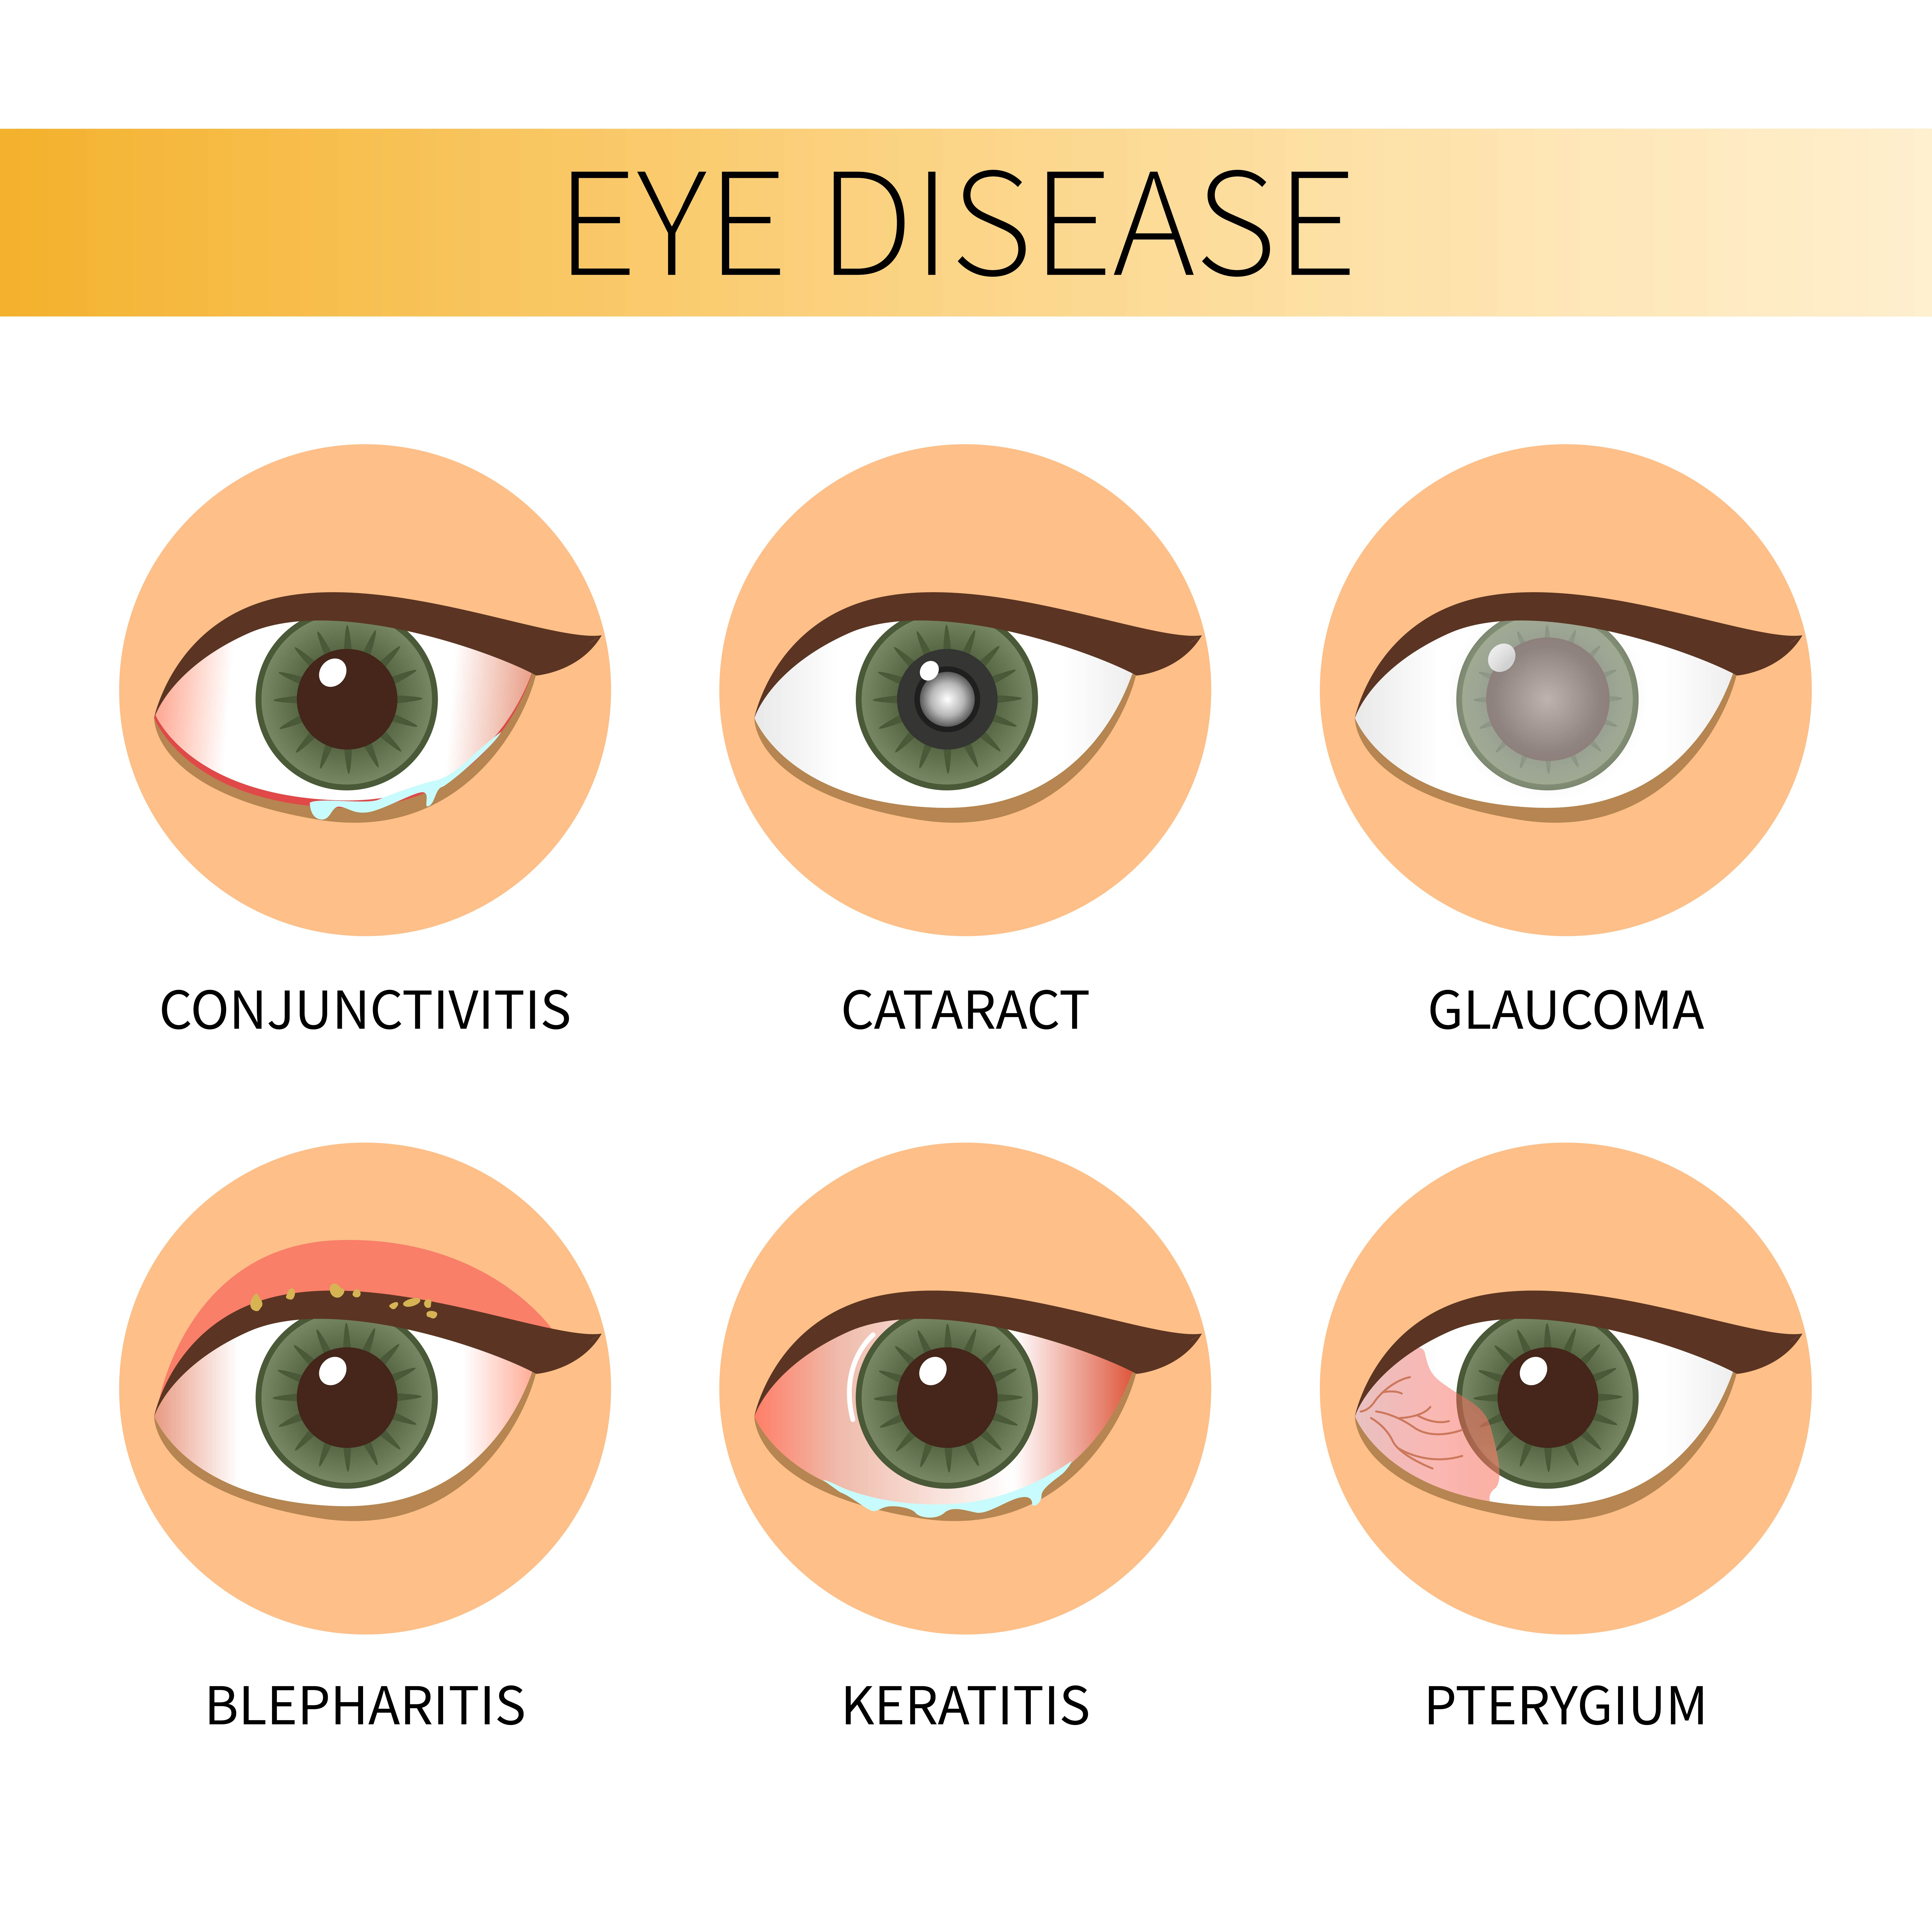 Eye disease examples